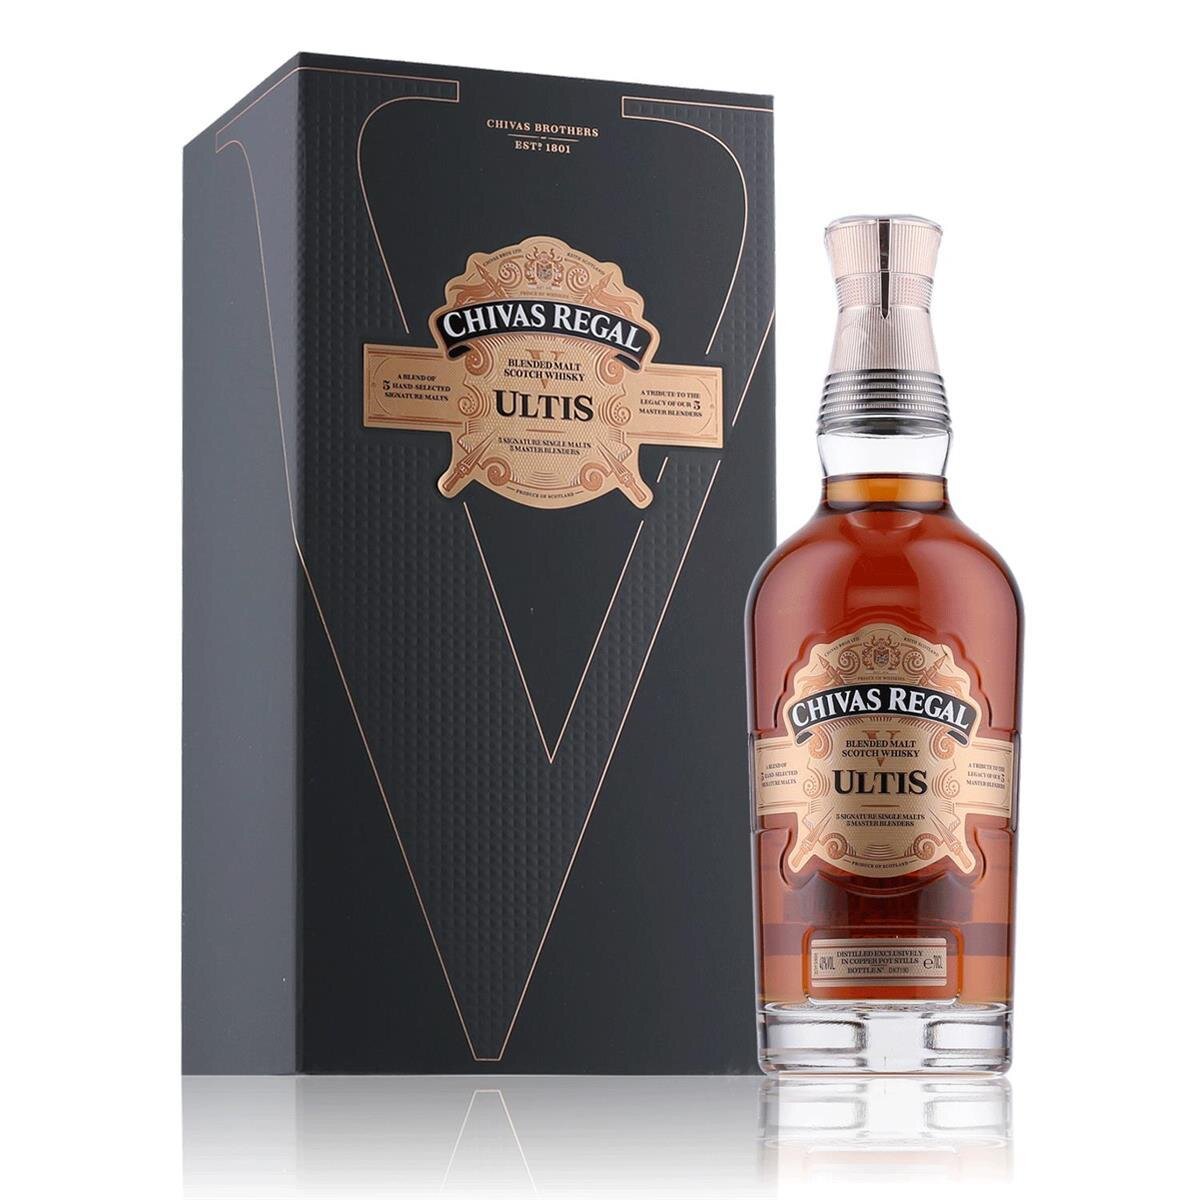 Chivas Regal 20 128, 40% Ultis Vol. Geschenkbox, 0,7l in Whisky Years